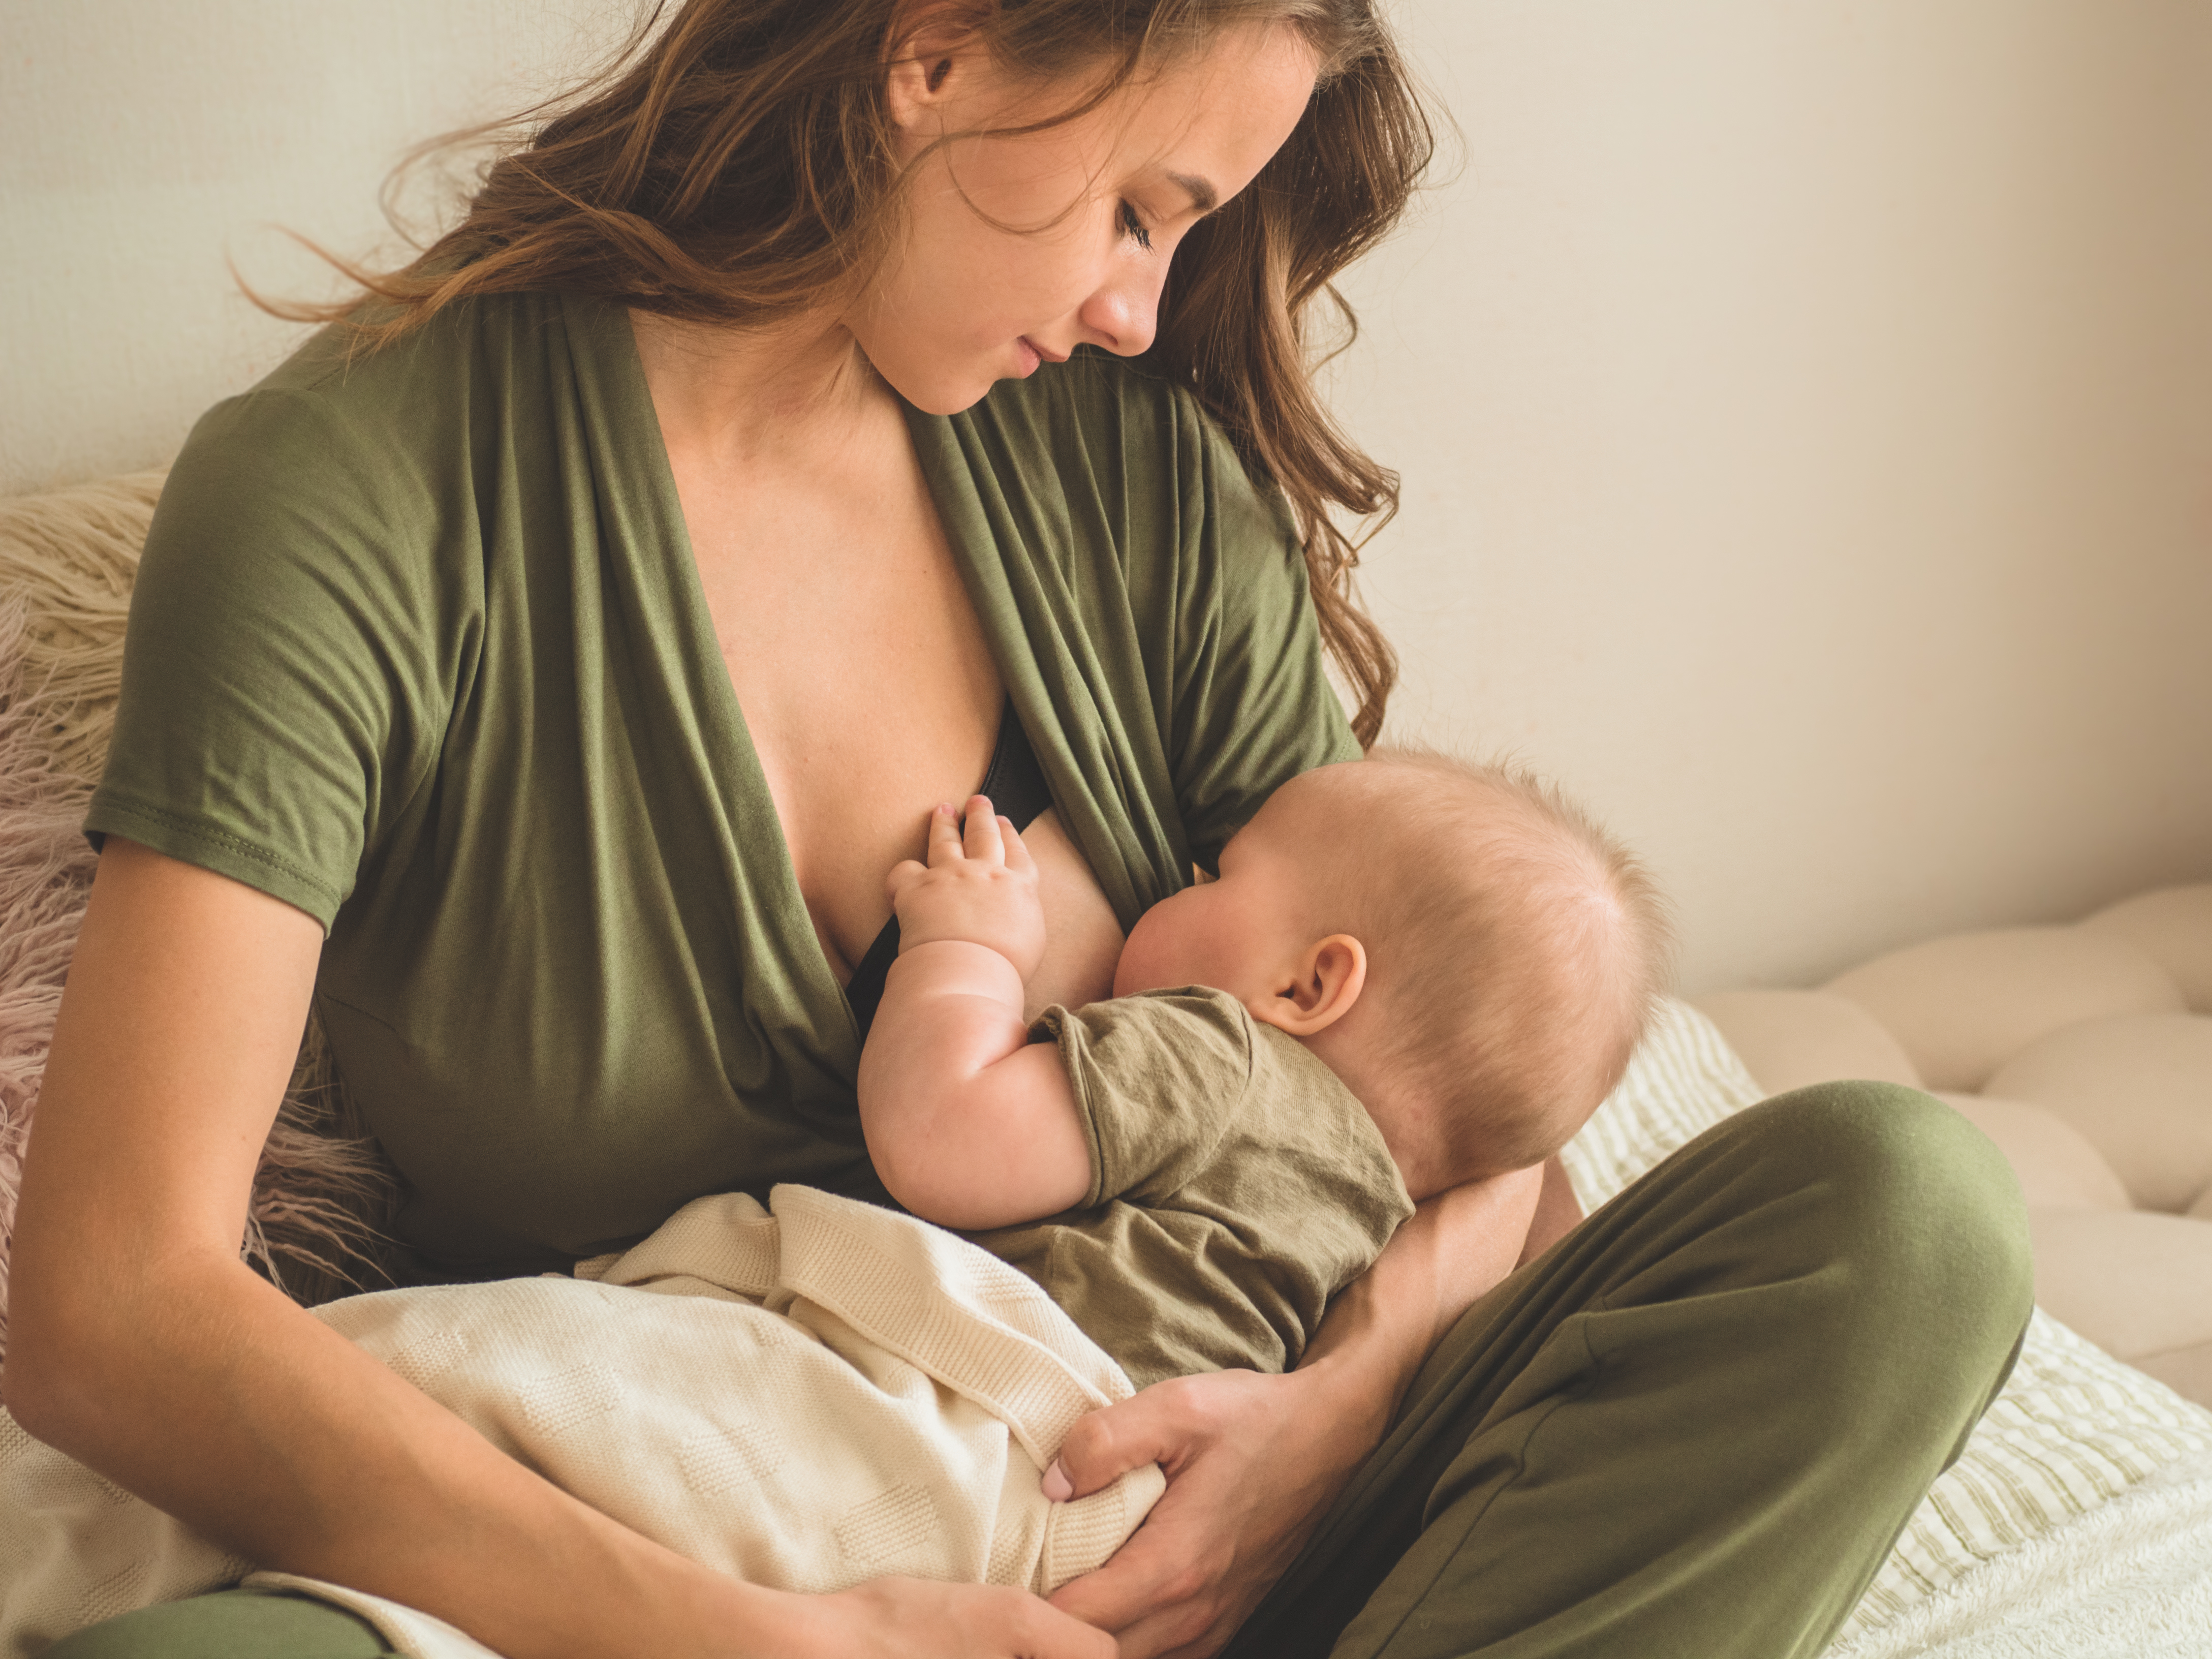 Imagem de uma mãe amamentando seu bebê ilustrando a importância do aleitamento materno